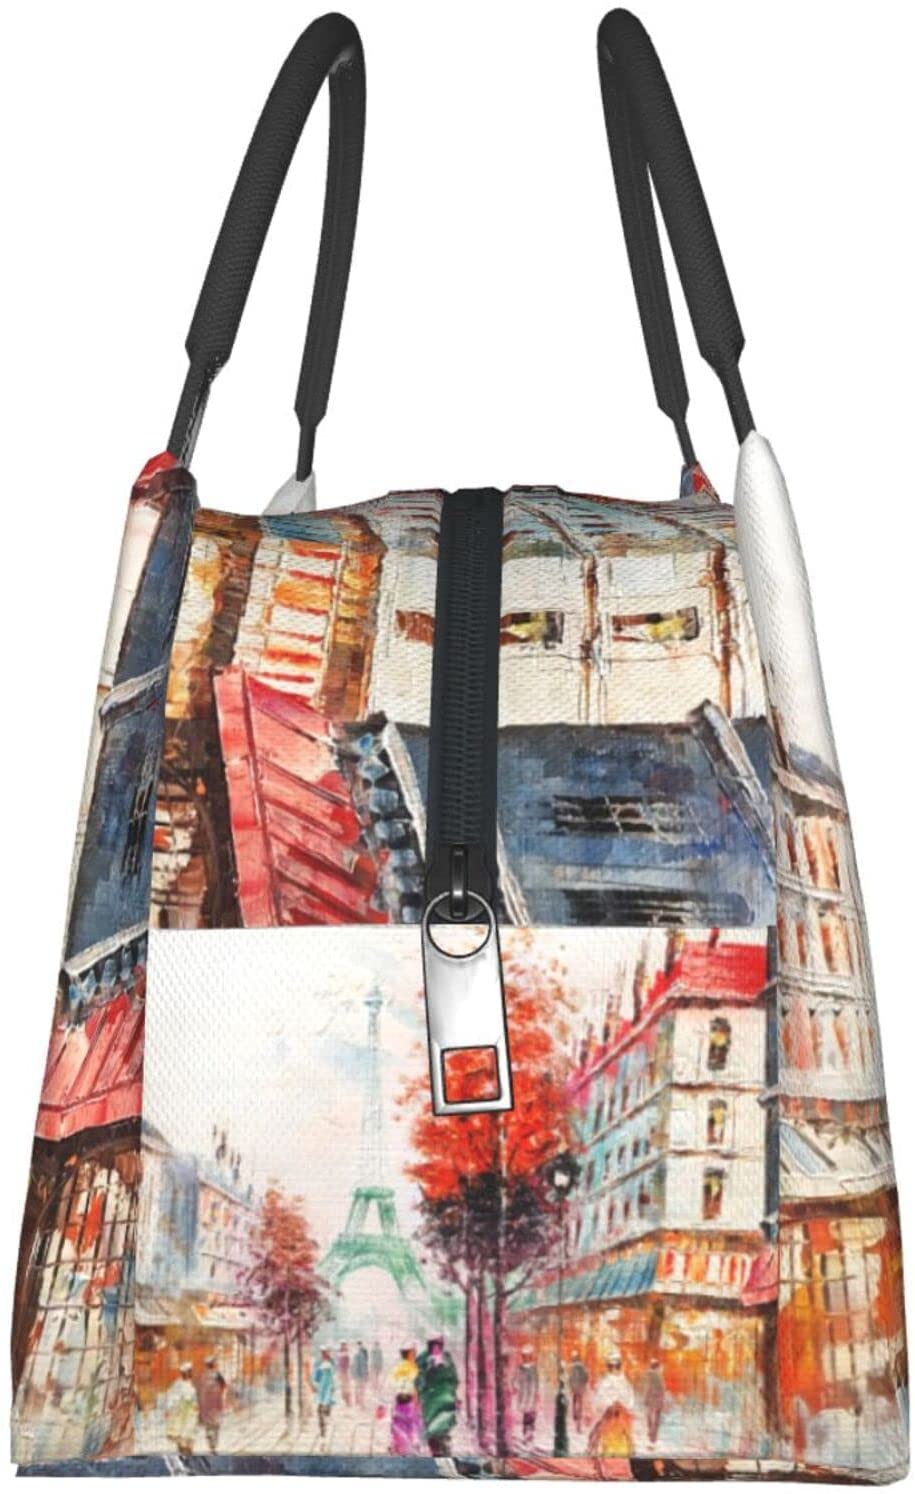 REALER brand 3 pcs printed handbag women large tote bag artificial leather shoulder messenger